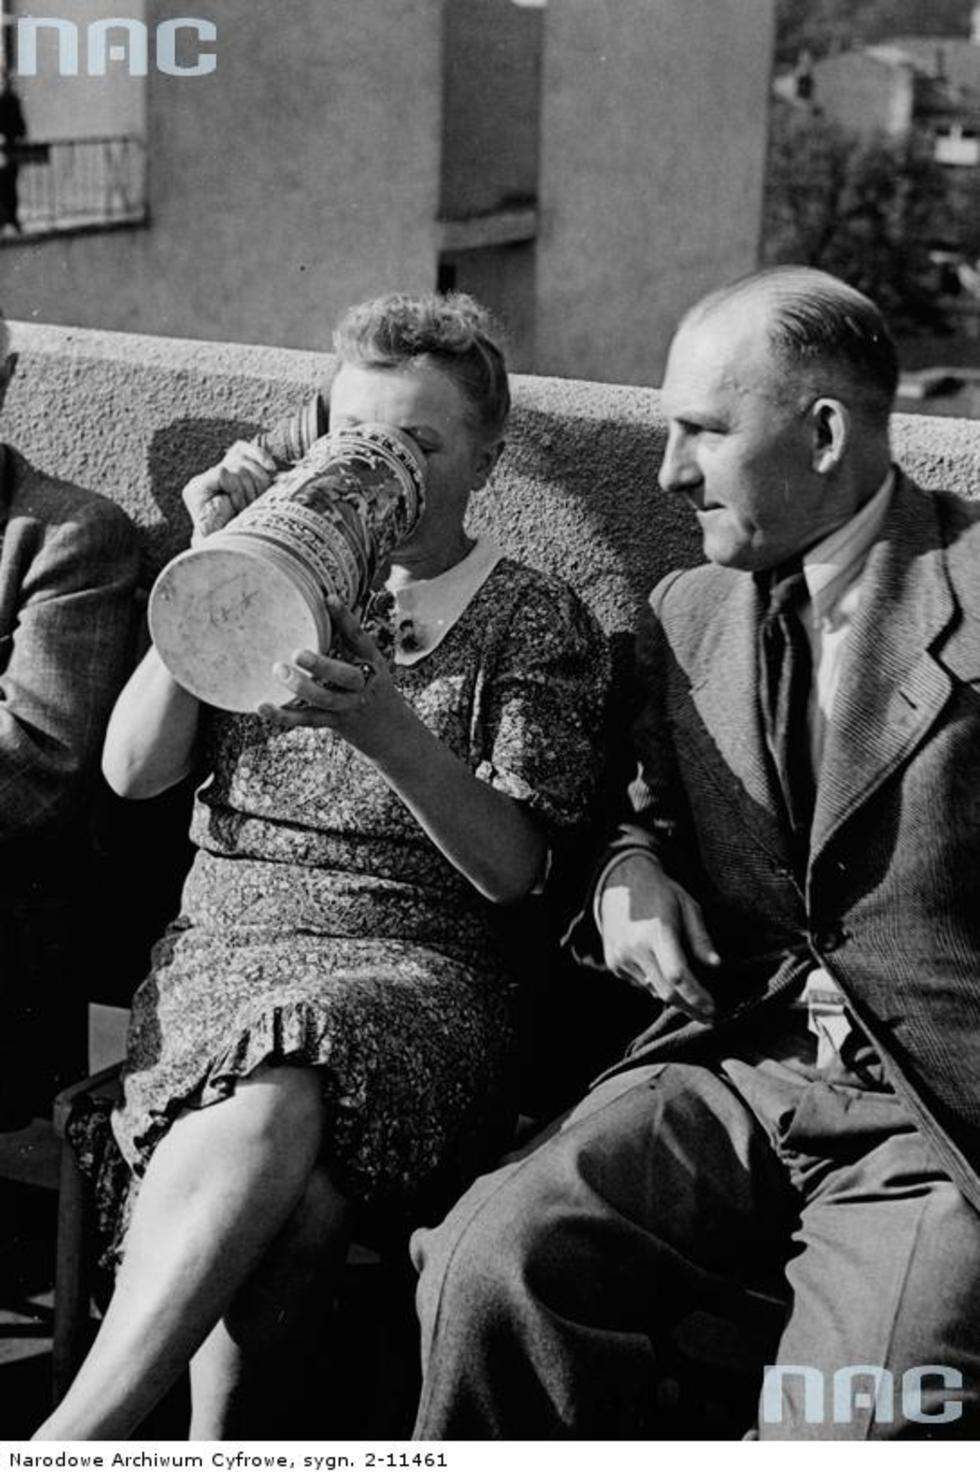  To świetny sposób na ugaszenie pragnienia w ciepłe dni. Zdjęcie zrobione w okresie 1939 - 1945 